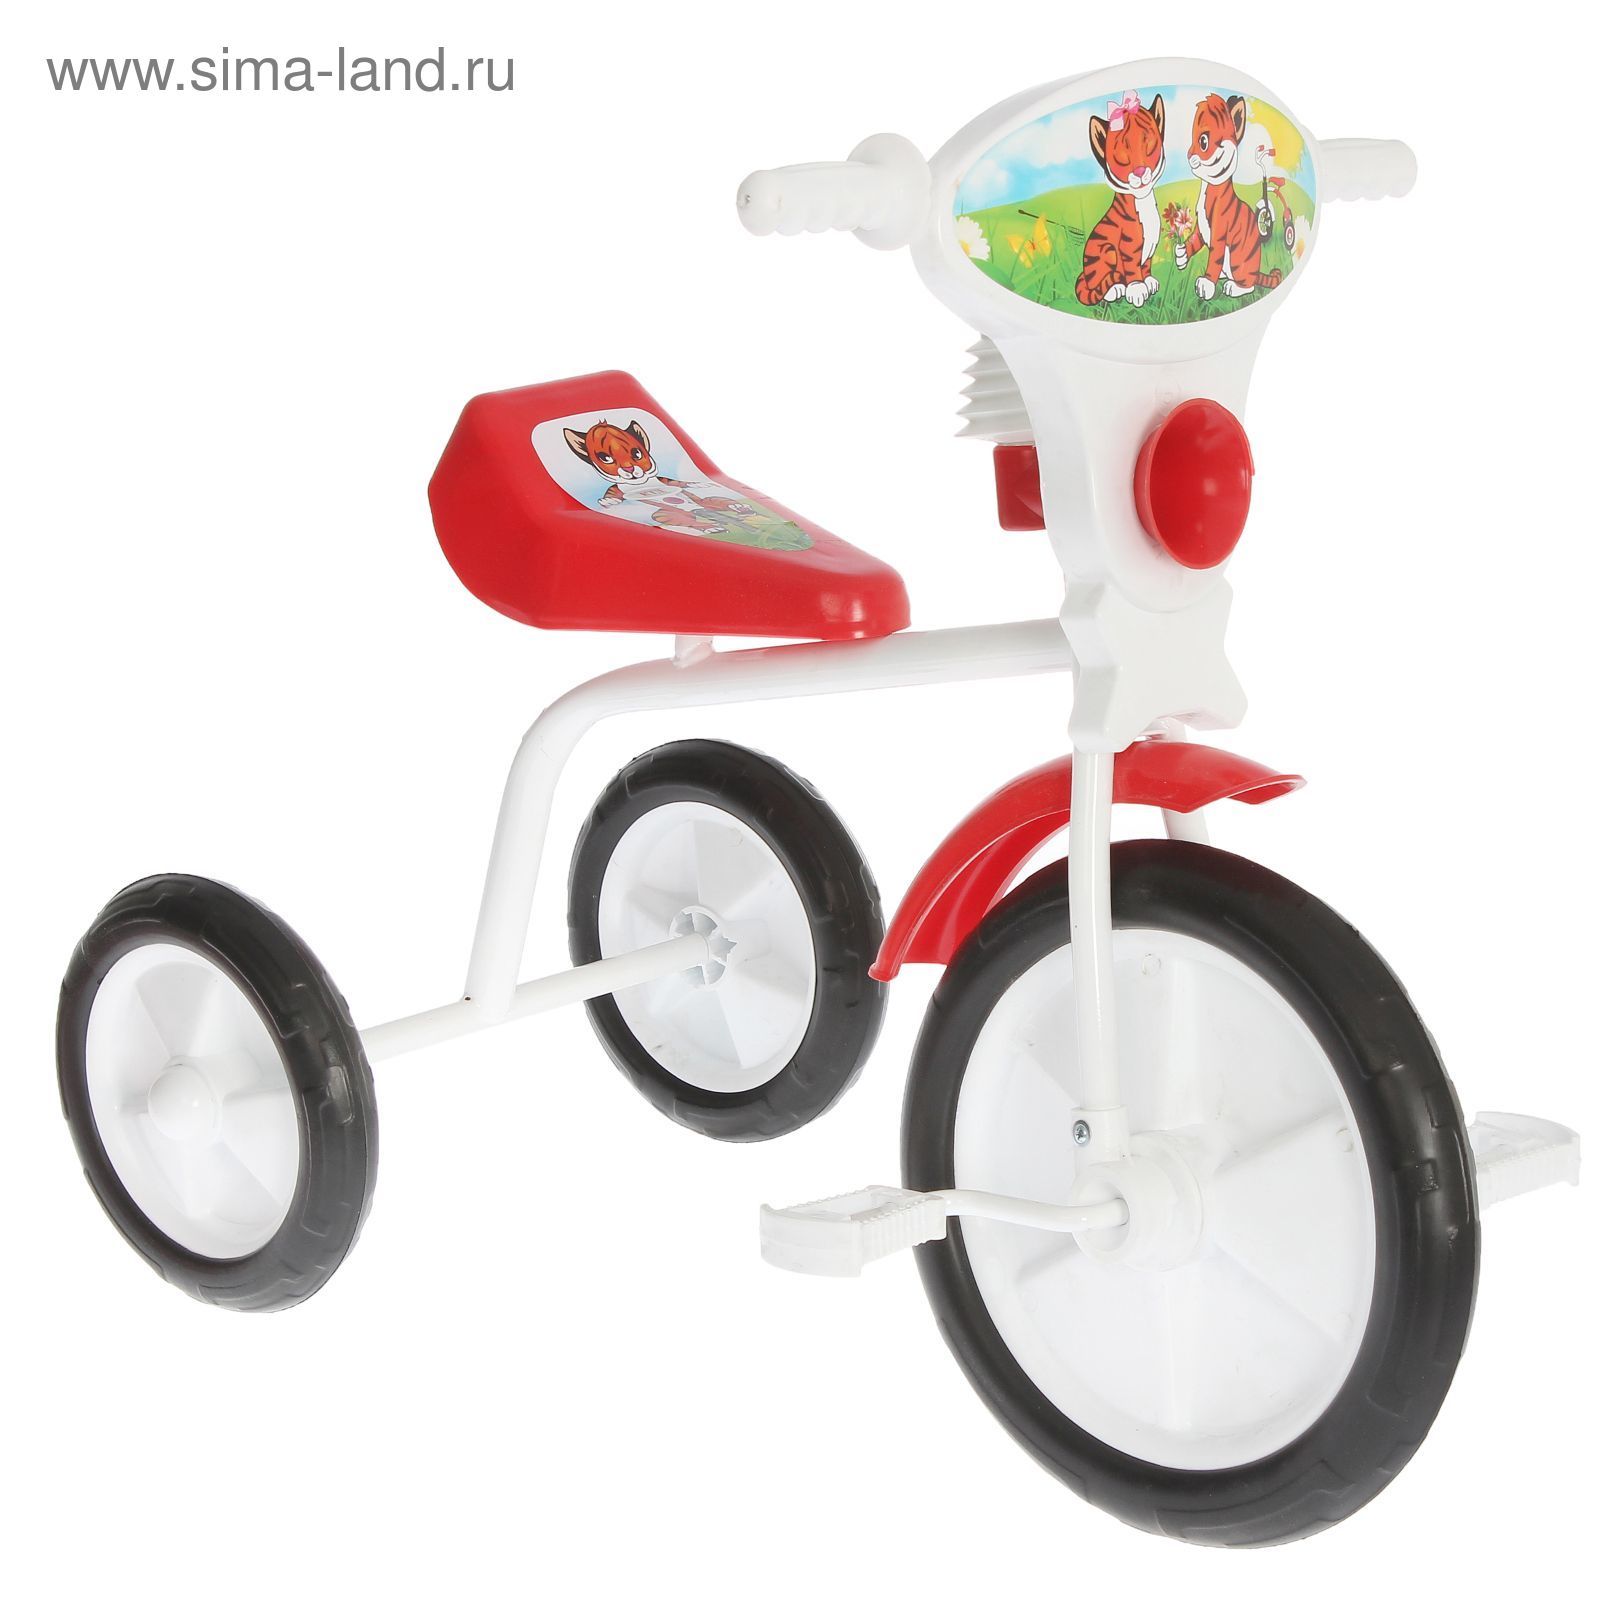 Велосипед трехколесный  "Малыш"  01П, цвет красный, фасовка: 3шт.